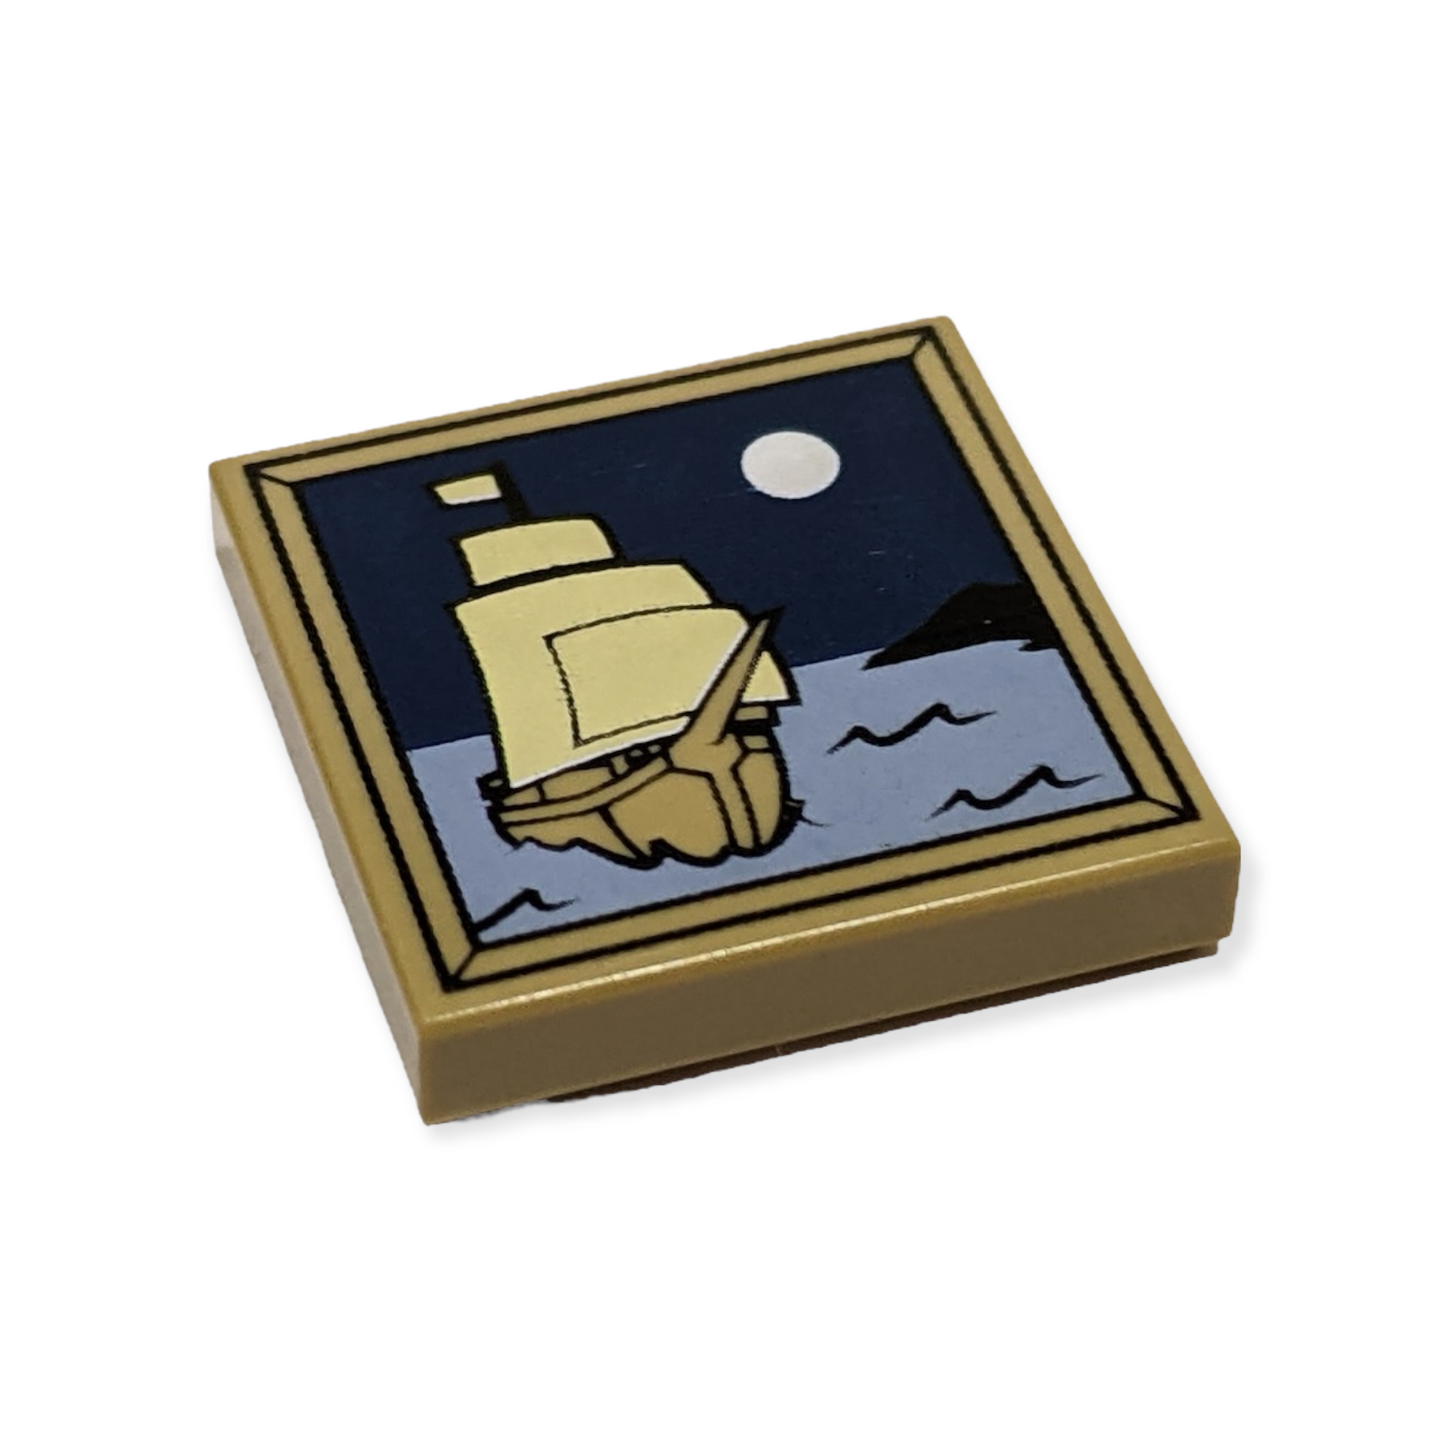 LEGO Tile 2x2 - Bild mit Segelschiff